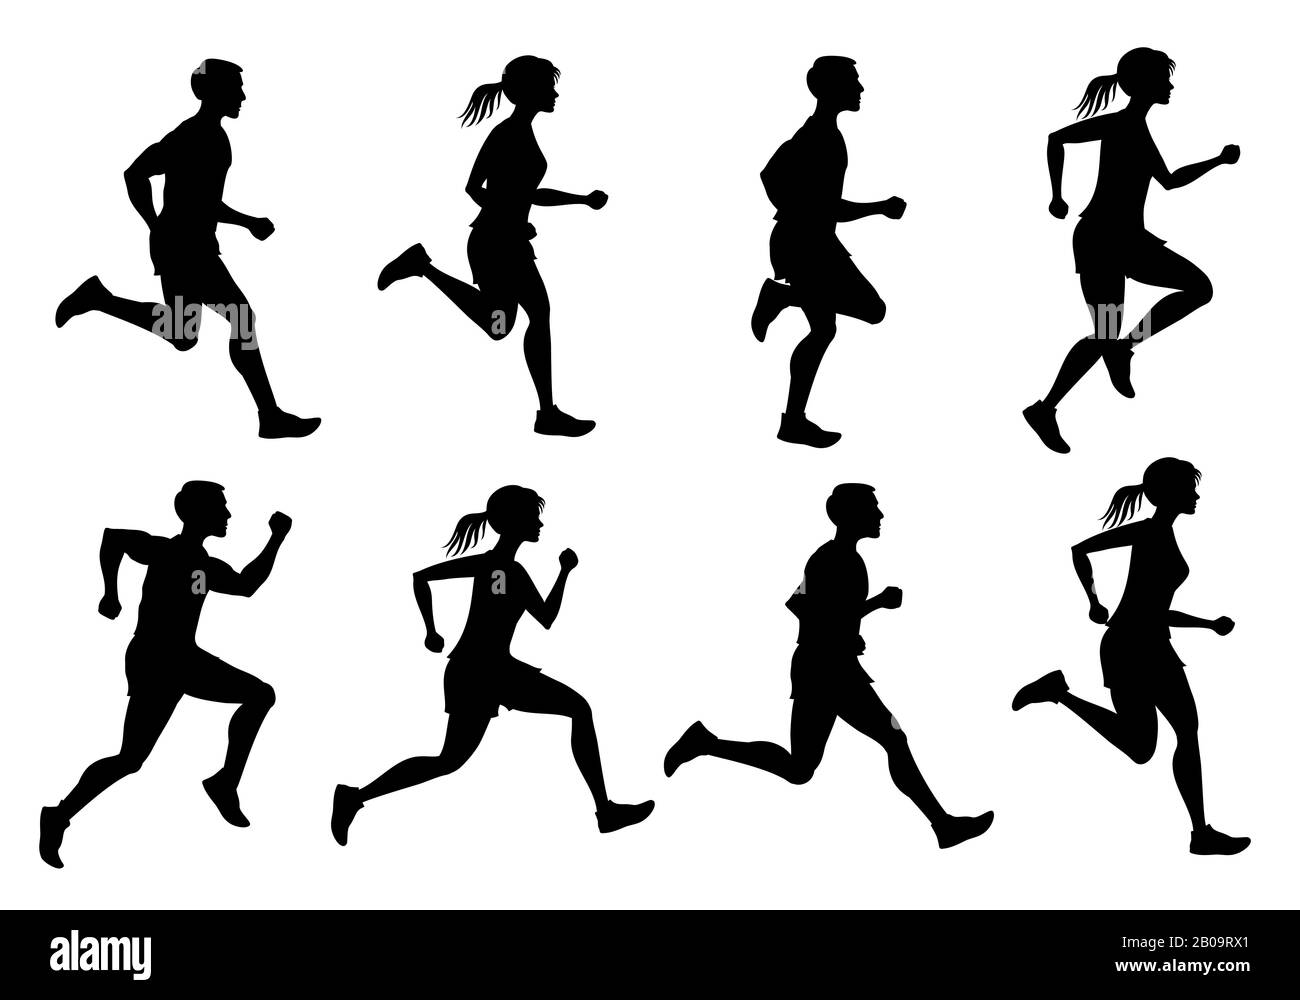 Running Männer und Frauen, Jogging Menschen Vektor-Silhouetten. Sport laufen Menschen Silhouette, Illustration laufen und joggen Menschen Stock Vektor